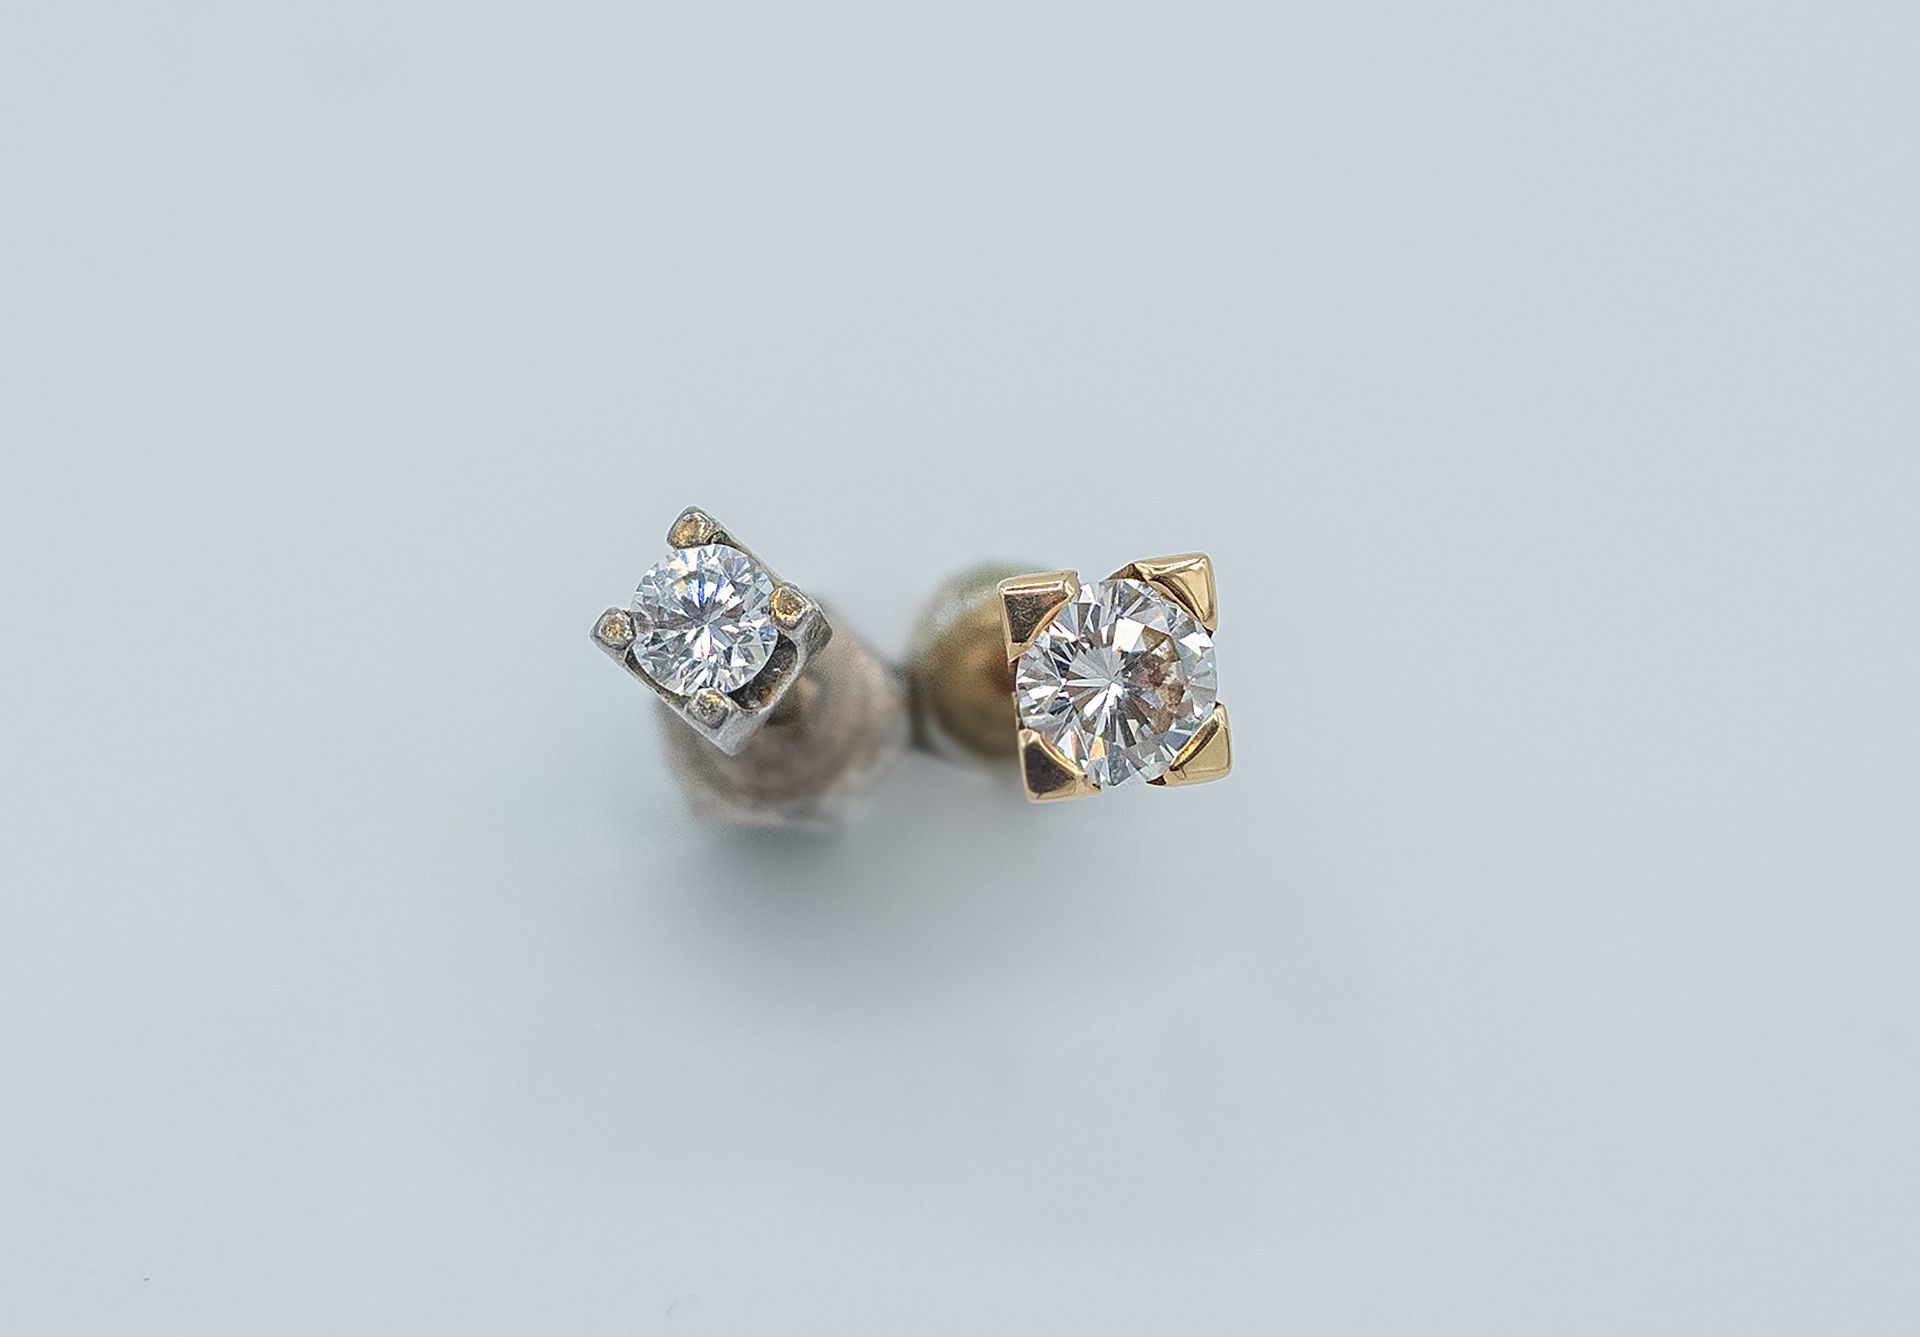 Two diamond stud earrings